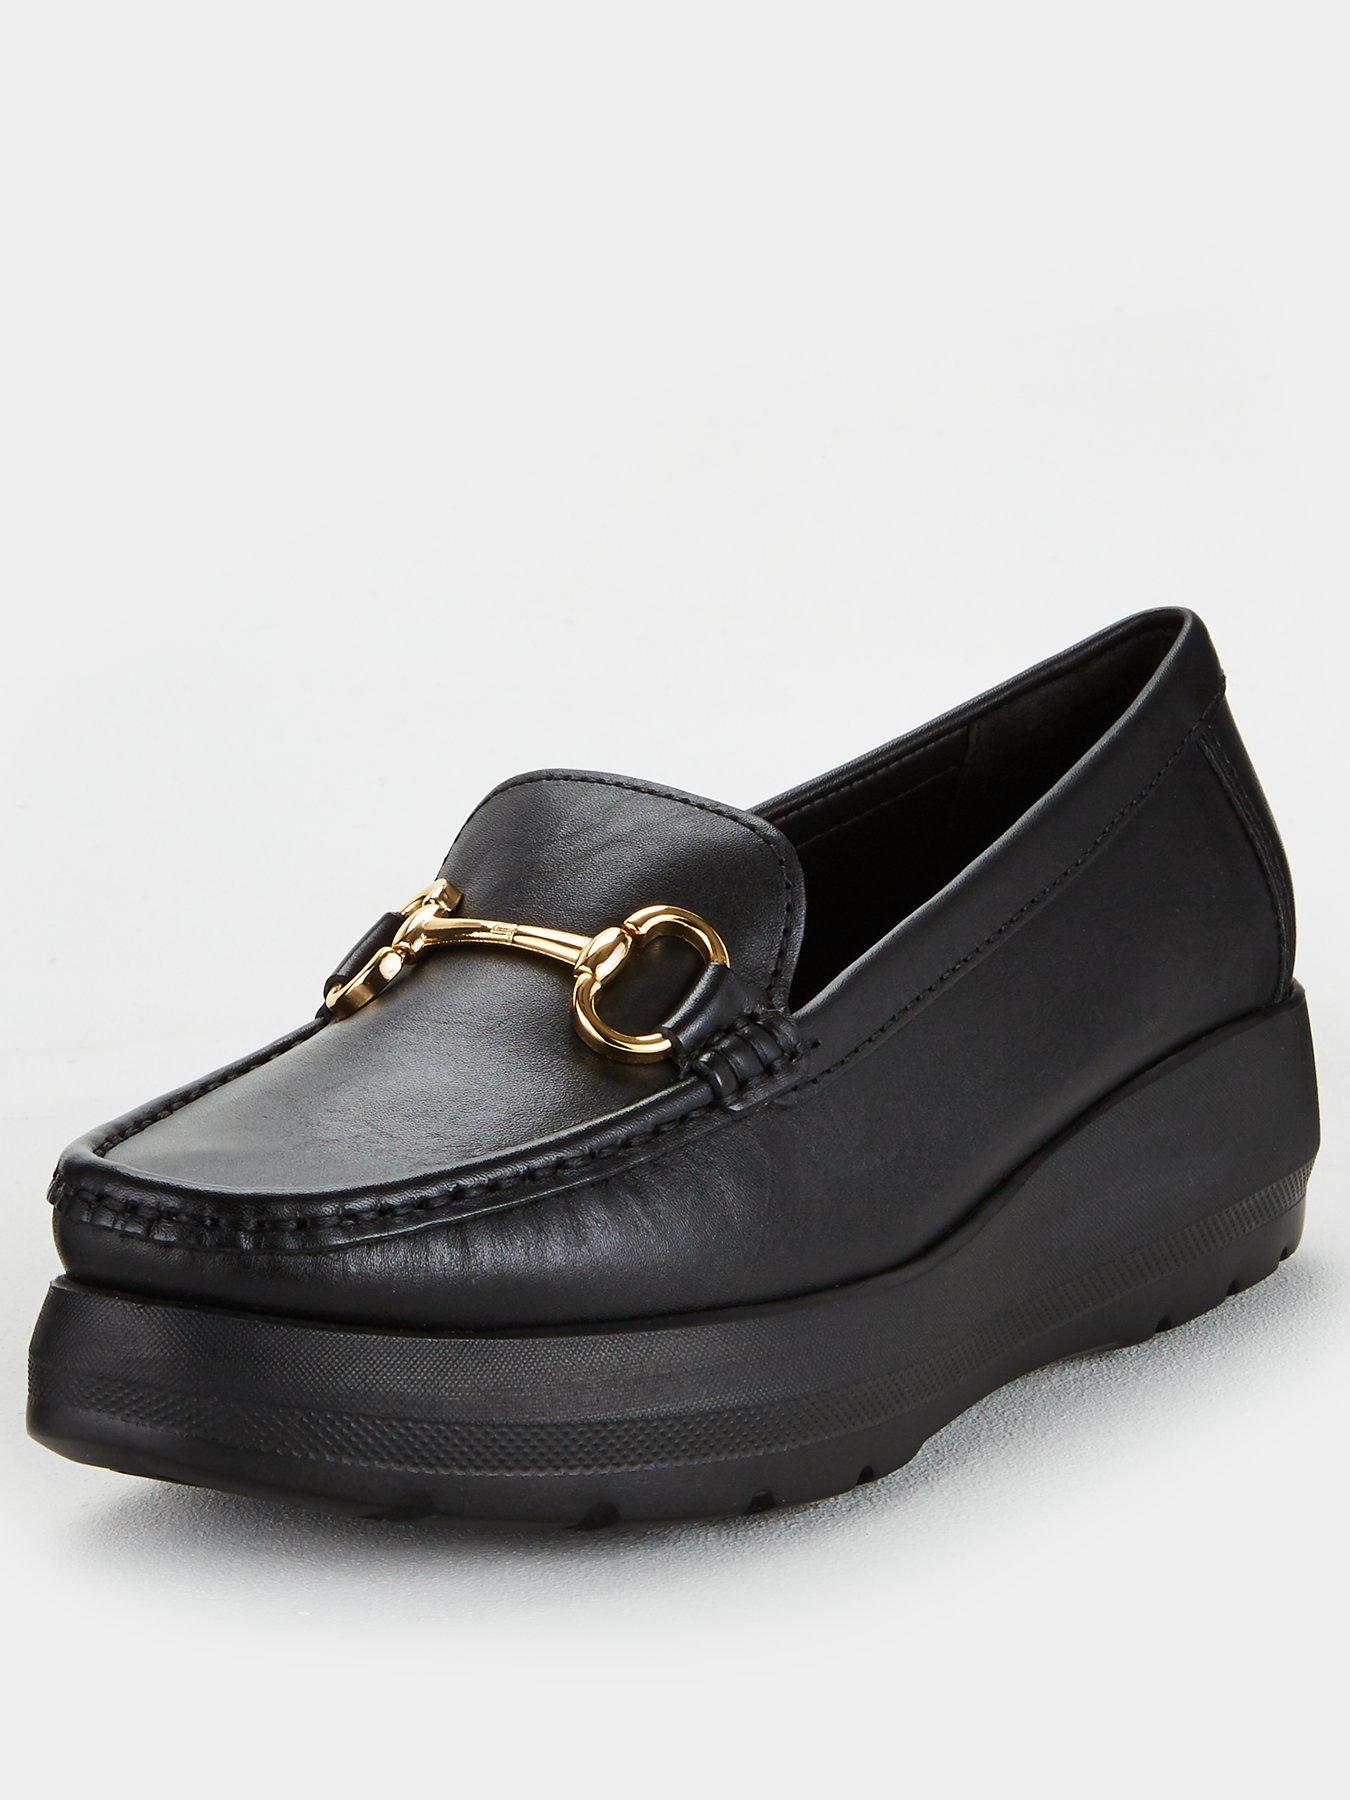 carvela formal shoes